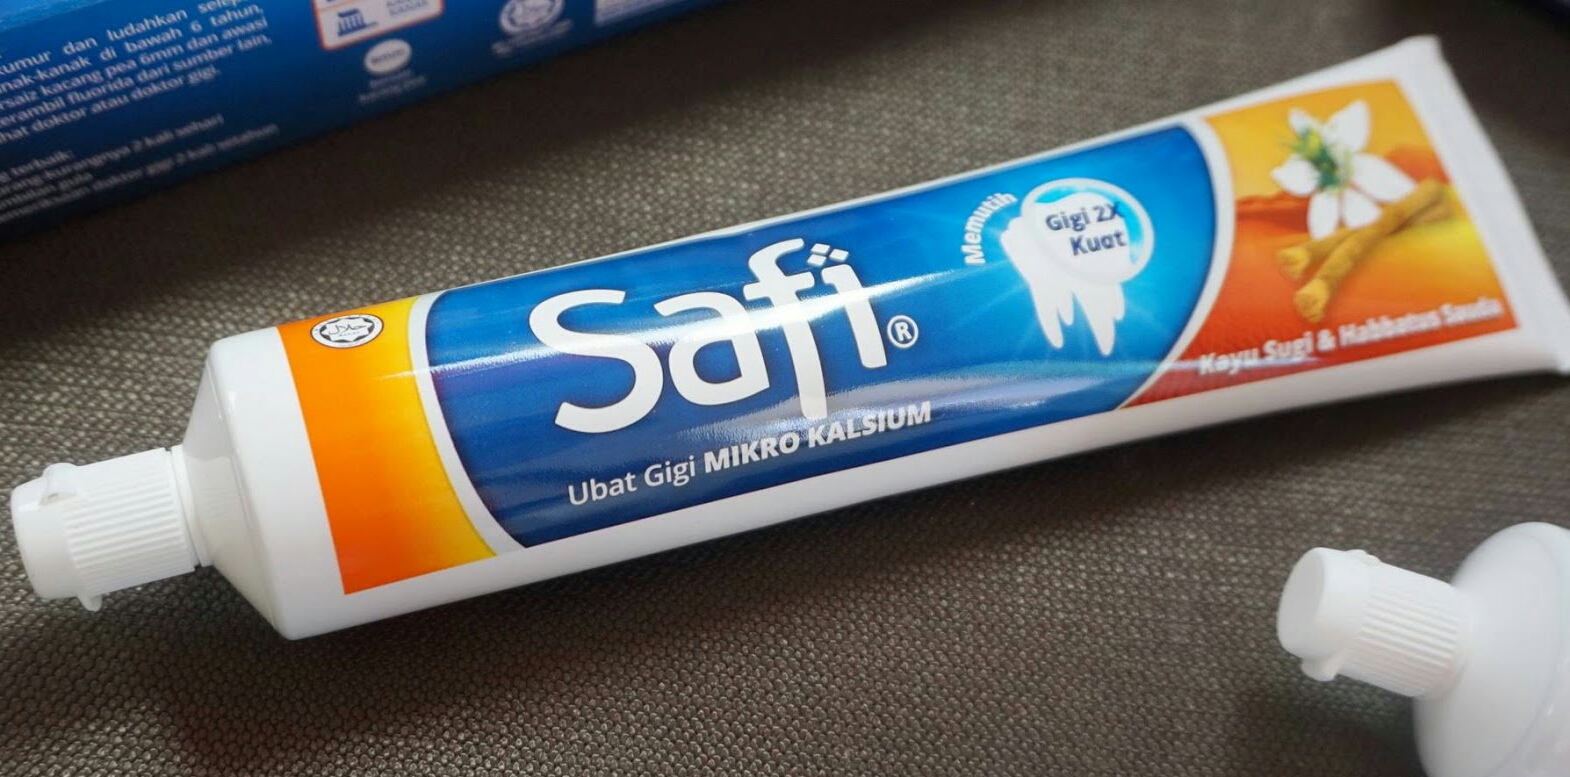 SAFI Toothpaste Kayu Sugi reviews